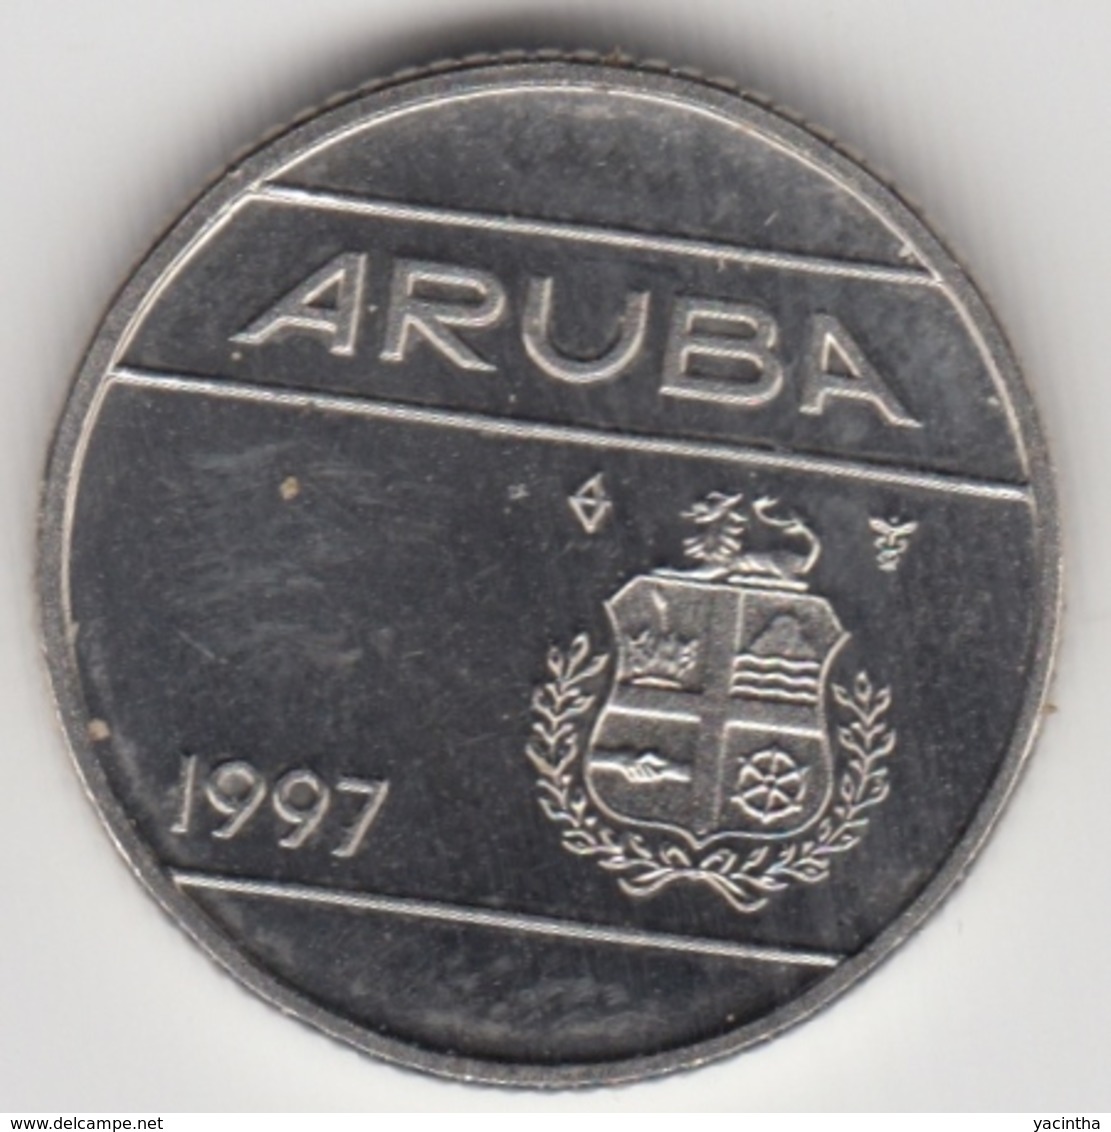 @Y@      Aruba   10 Cent   1997  (3573) - Aruba